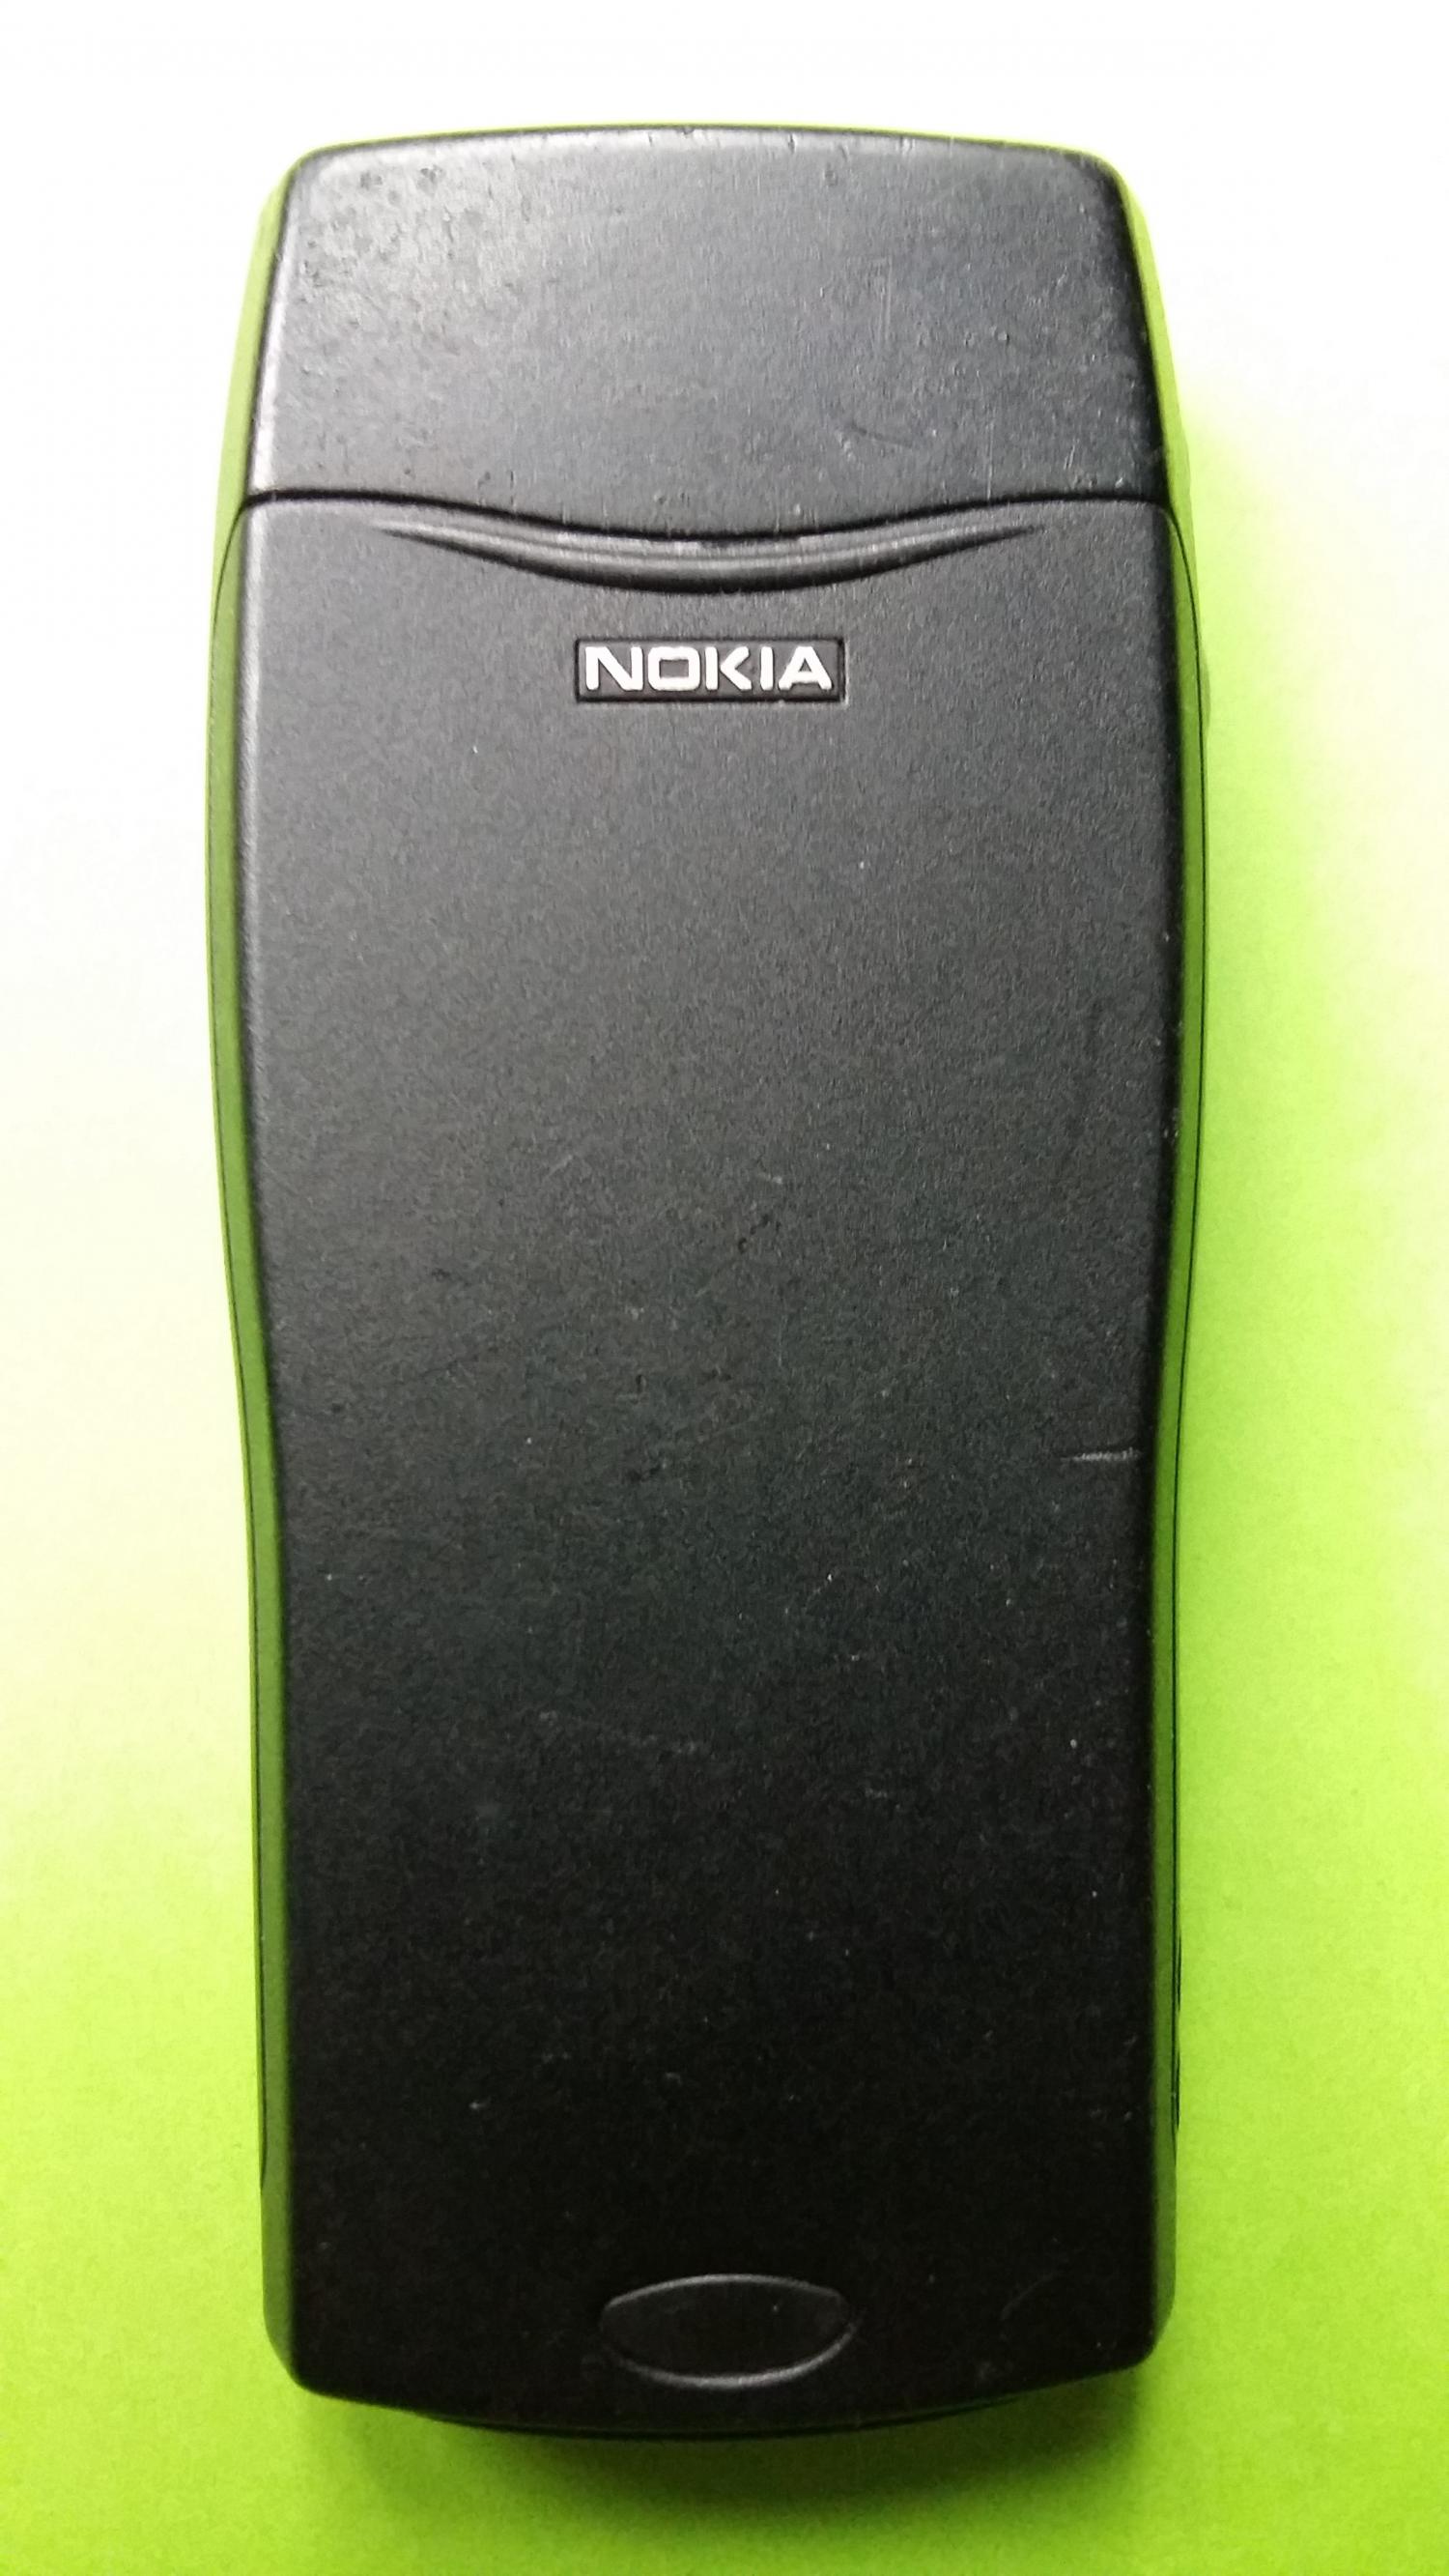 image-7299188-Nokia 8210 (32)2.jpg